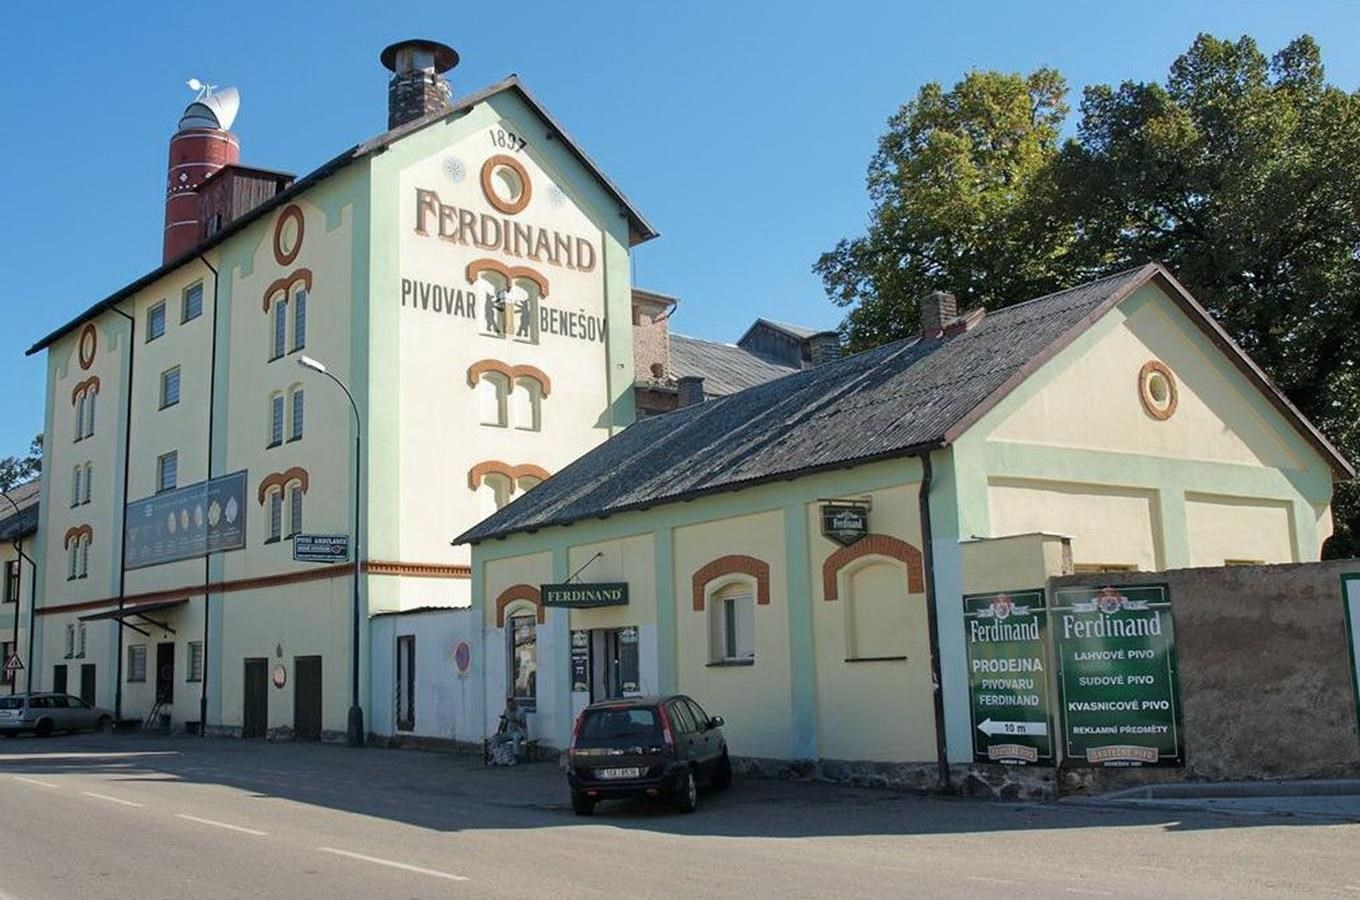 Pivovar Ferdinand v Benešově – výroba skutečného piva